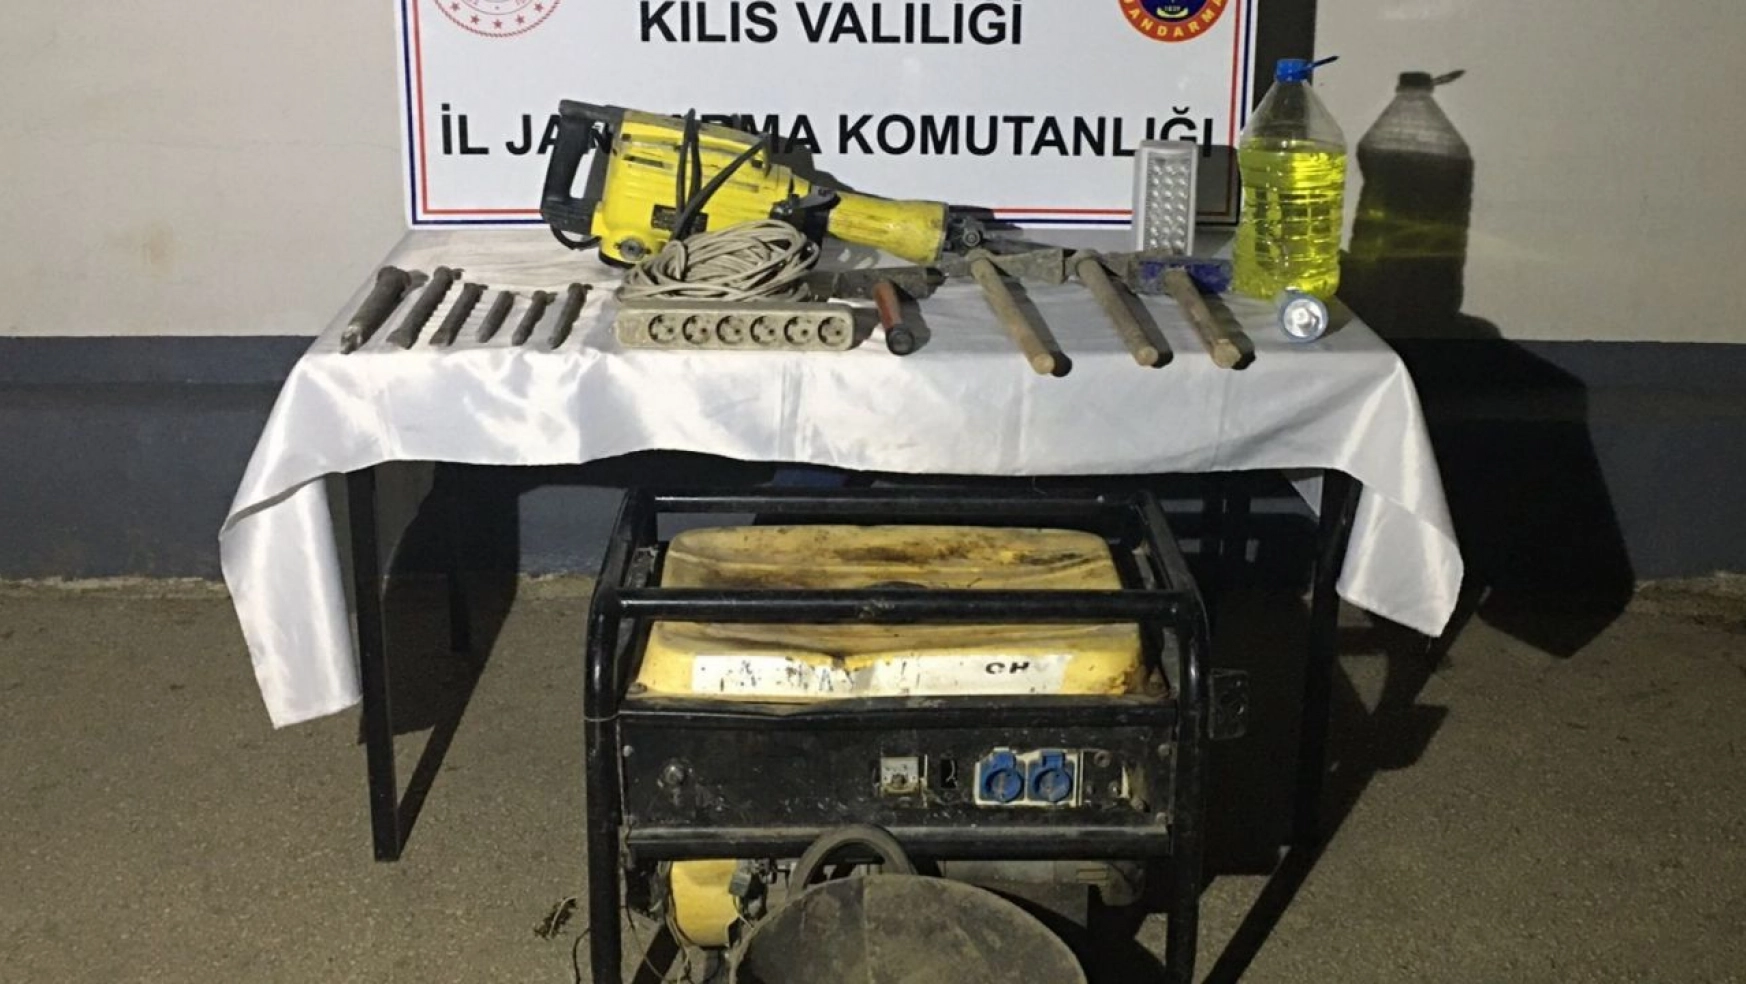 Kilis'te kaçak kazı yapan 4 kişi suçüstü yakalandı